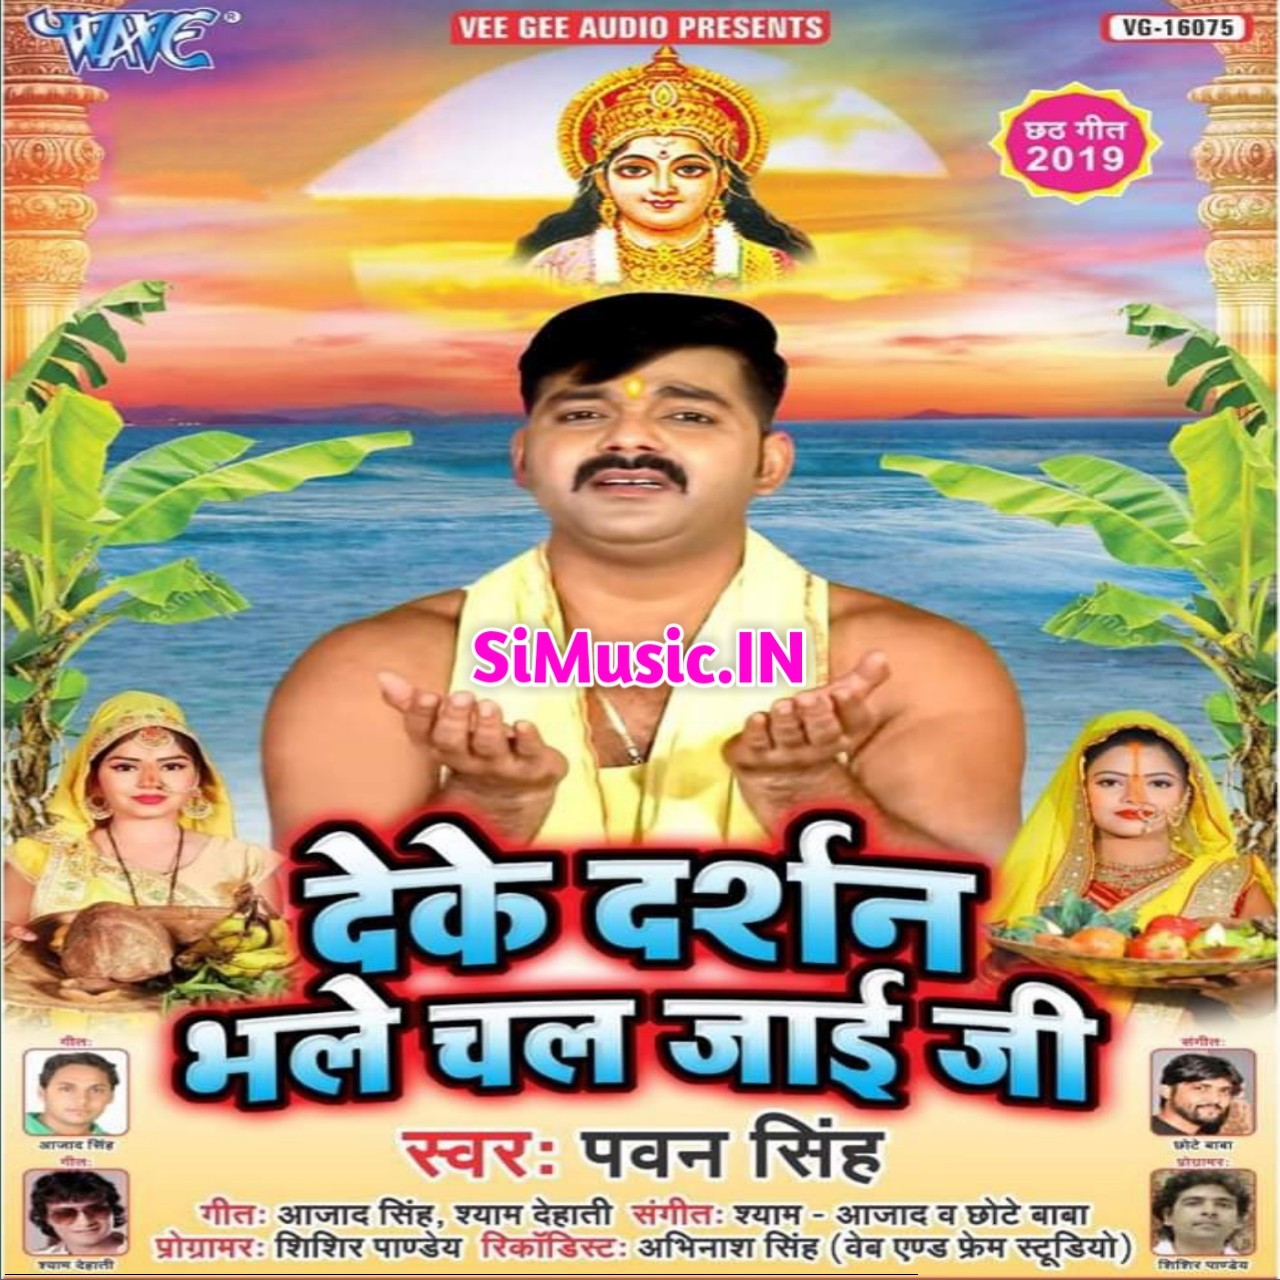 Deke Darshan Bhale Chal Jaai Ji (Pawan Singh) 2019 Mp3 Songs